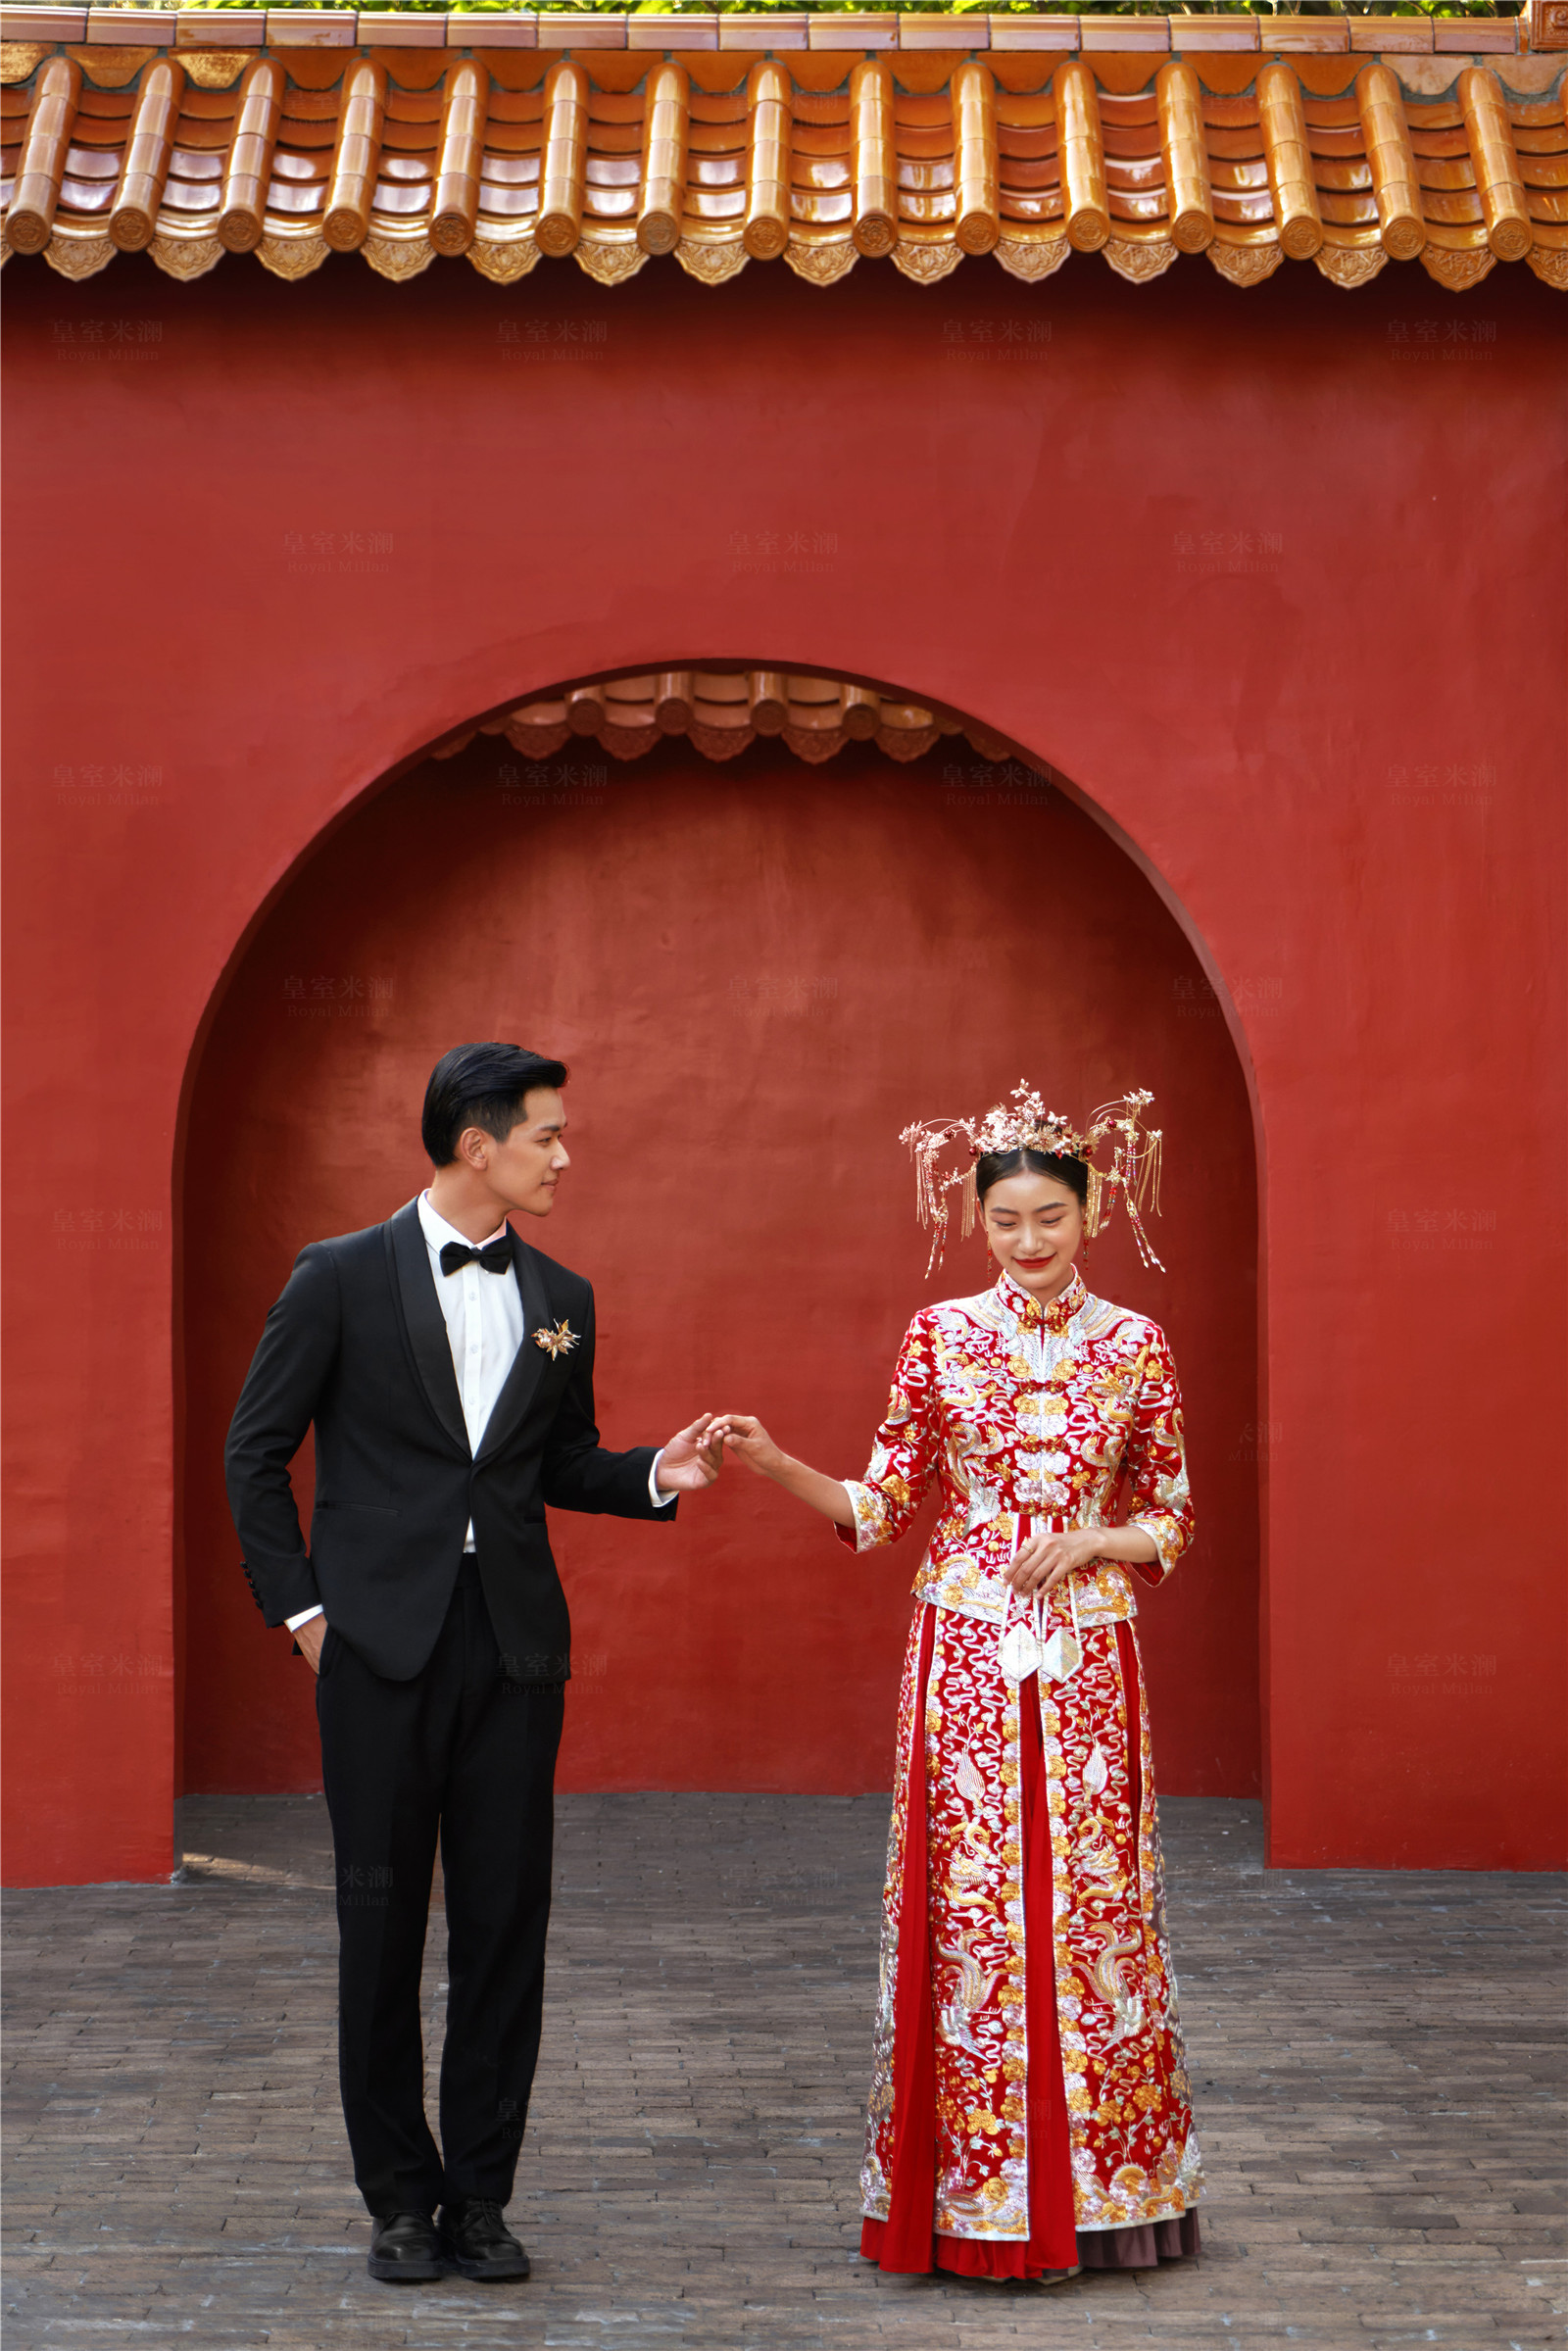 星空婚礼_近期主题 | 作品展示 | 深圳皇室米兰婚纱摄影集团